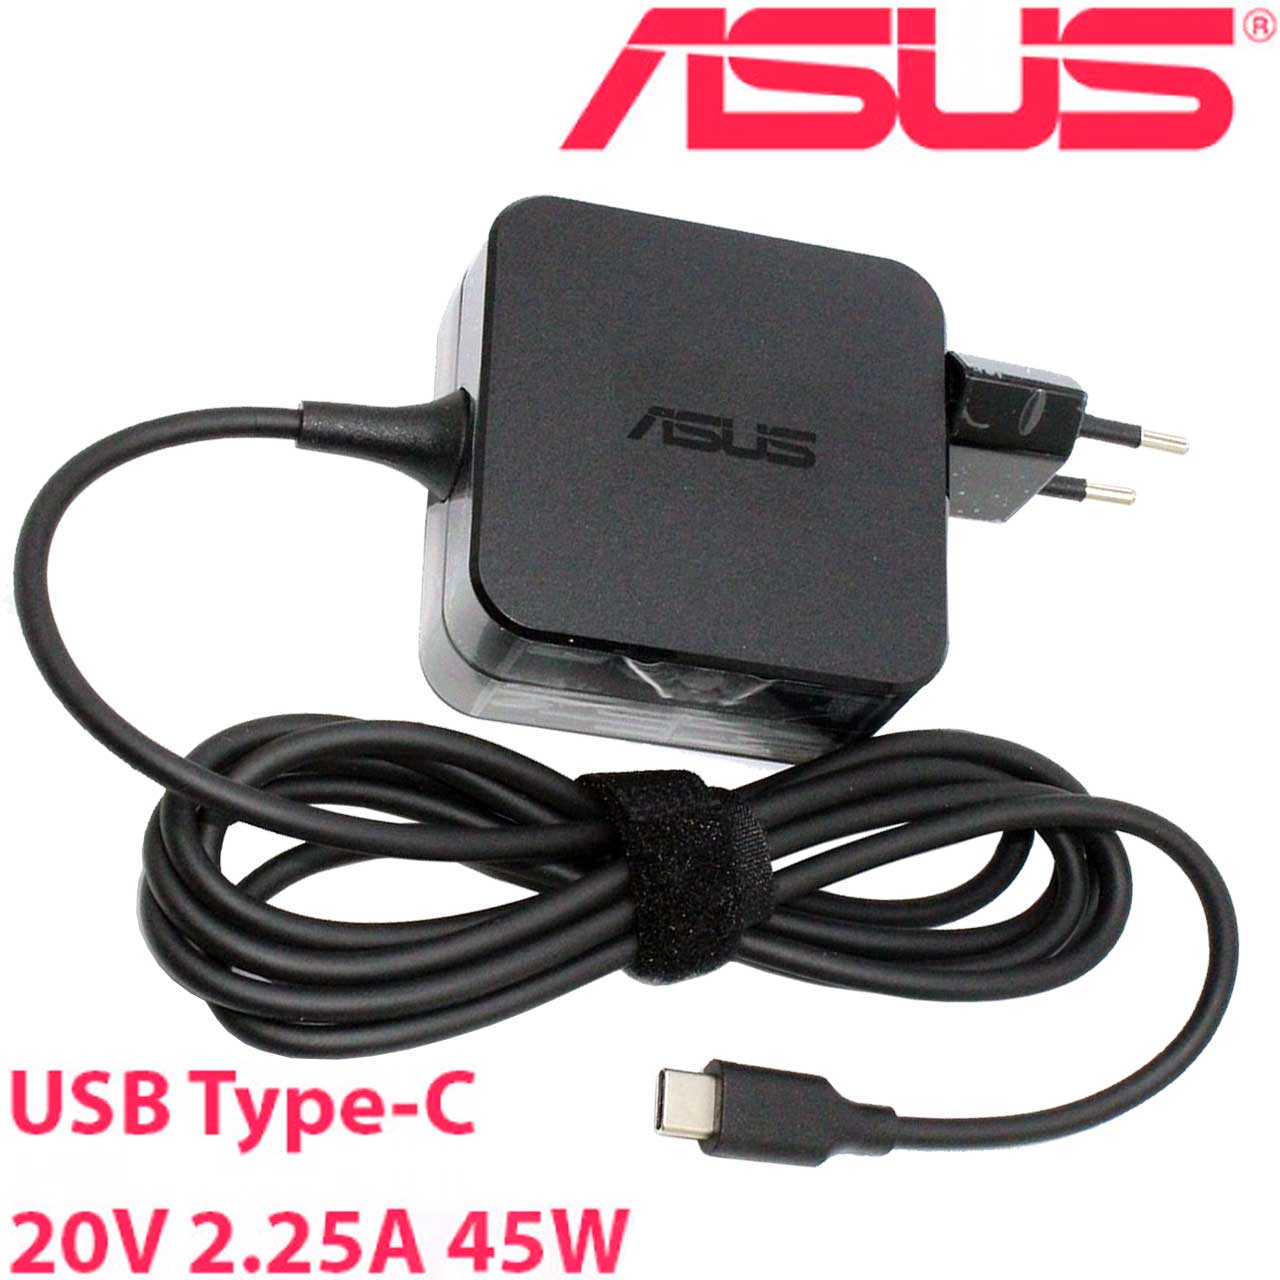 شارژر لپ تاپ ایسوس 20 ولت 2.25 آمپر مربعی اورجینال USB Type-C